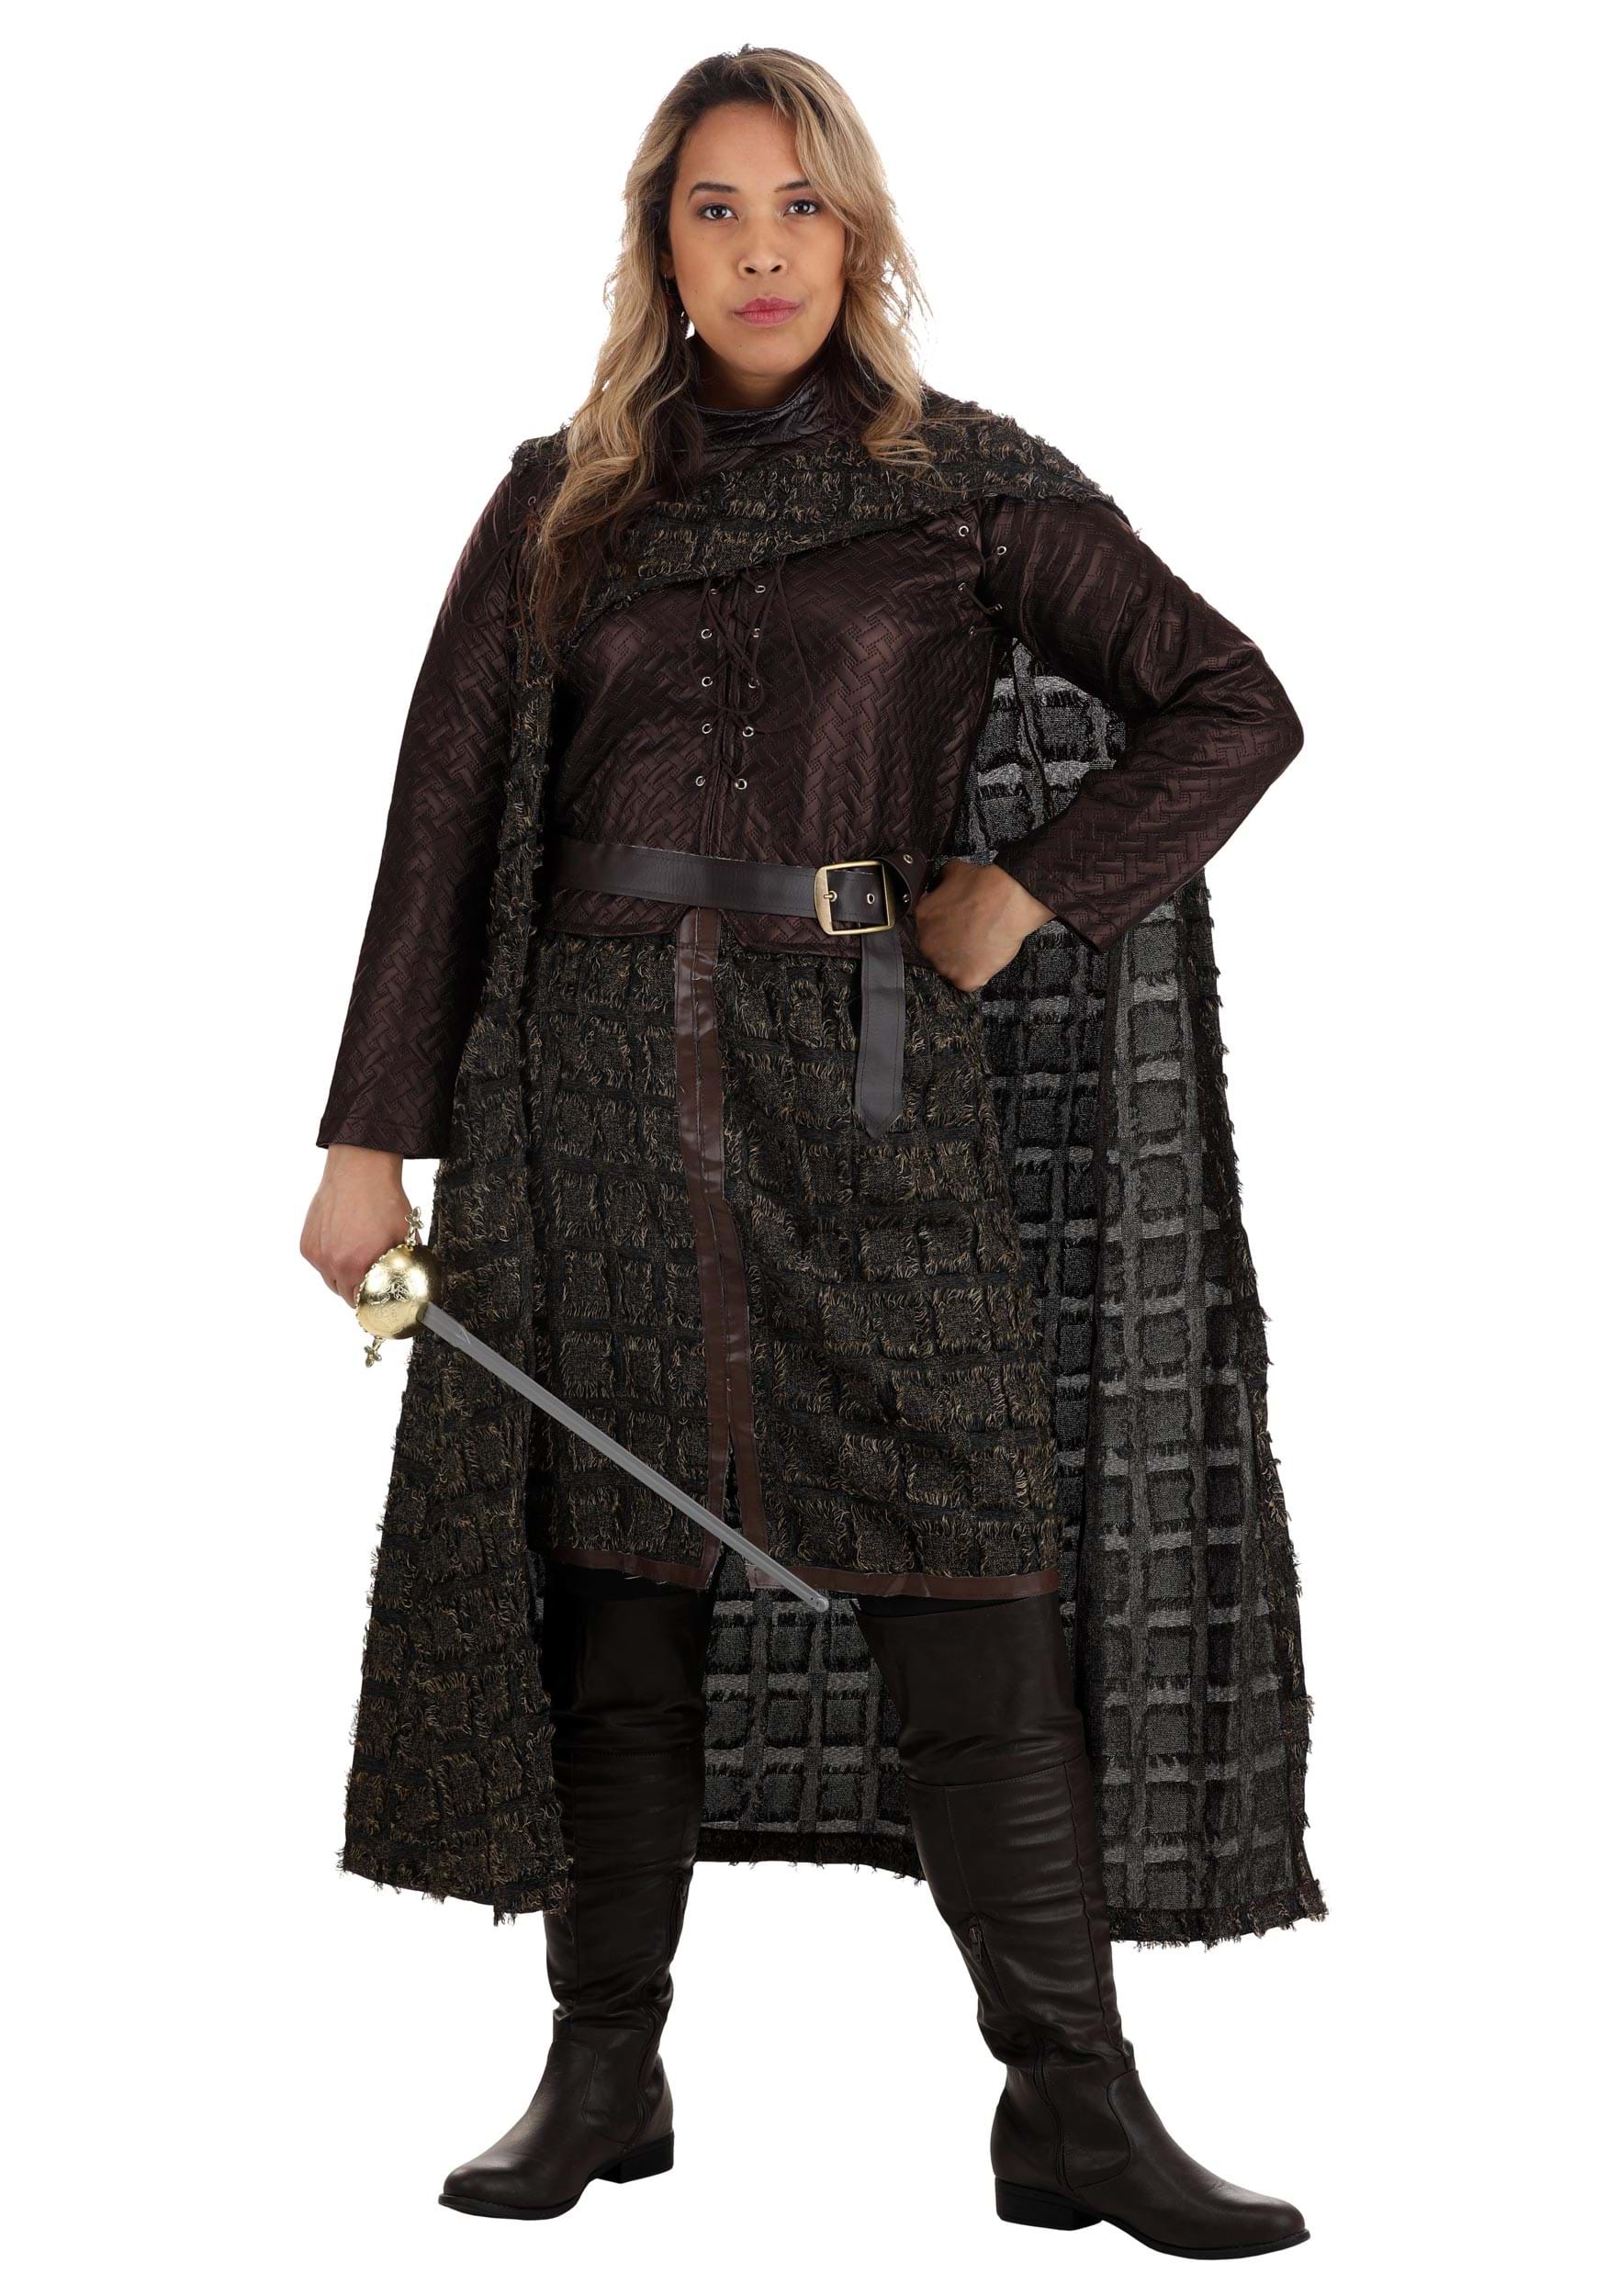 Women's Winter Warrior Fancy Dress Costume With Cape & Jacket